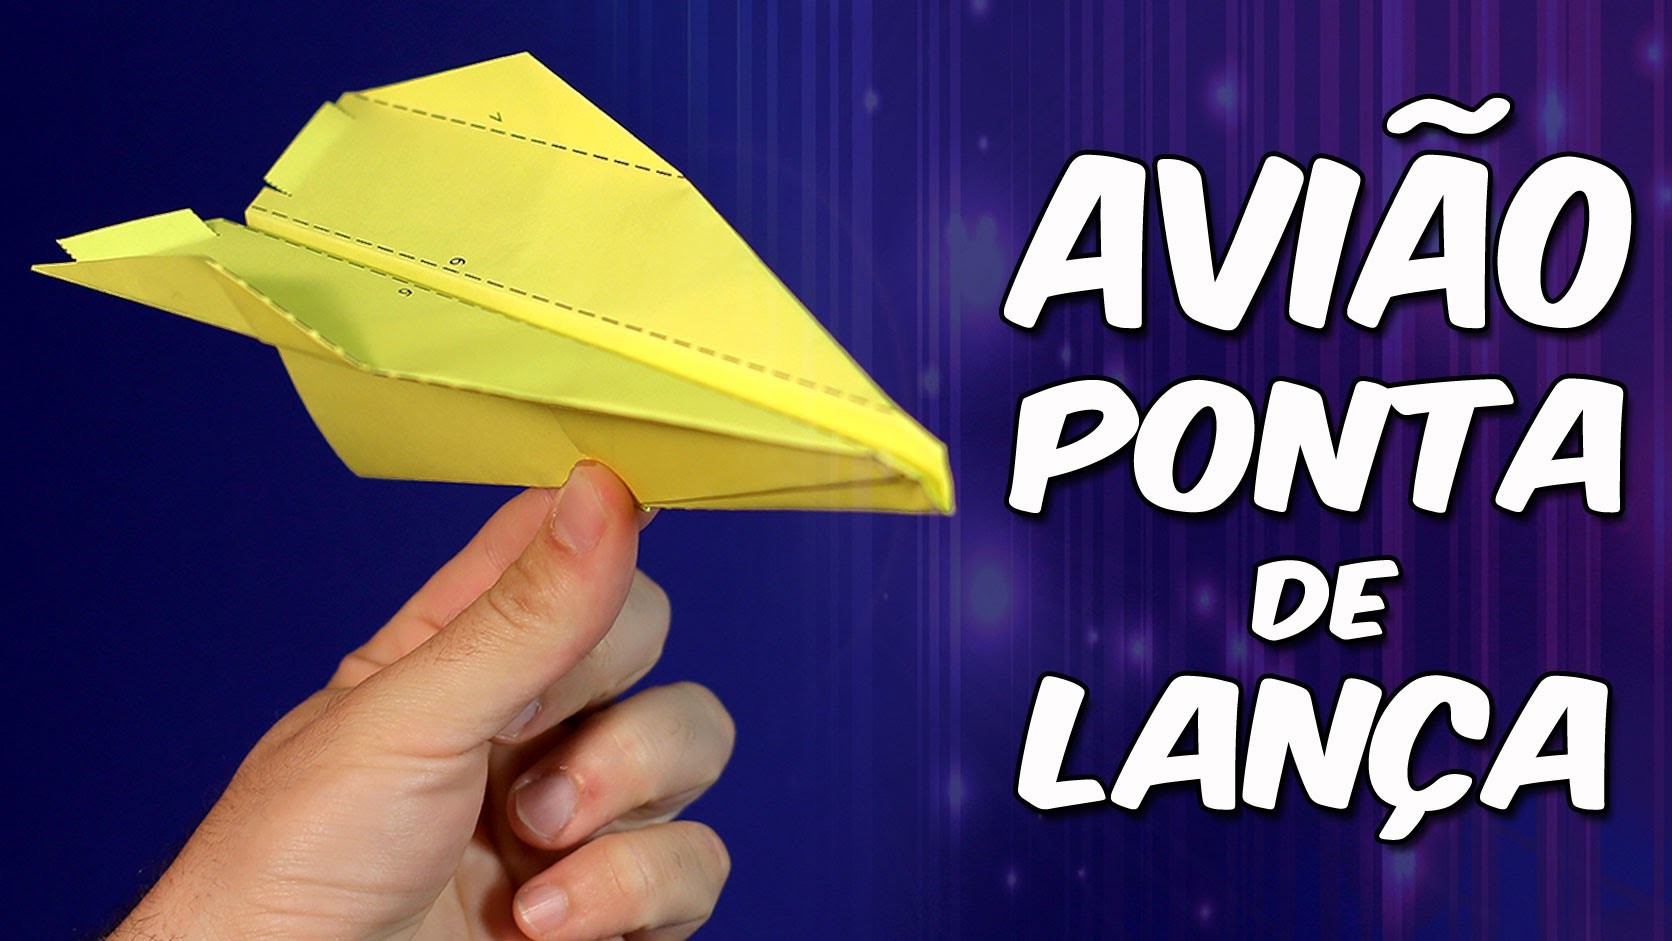 Espetacular avião Ponta de Lança: você nunca voou tão alto! - origami.dobradura